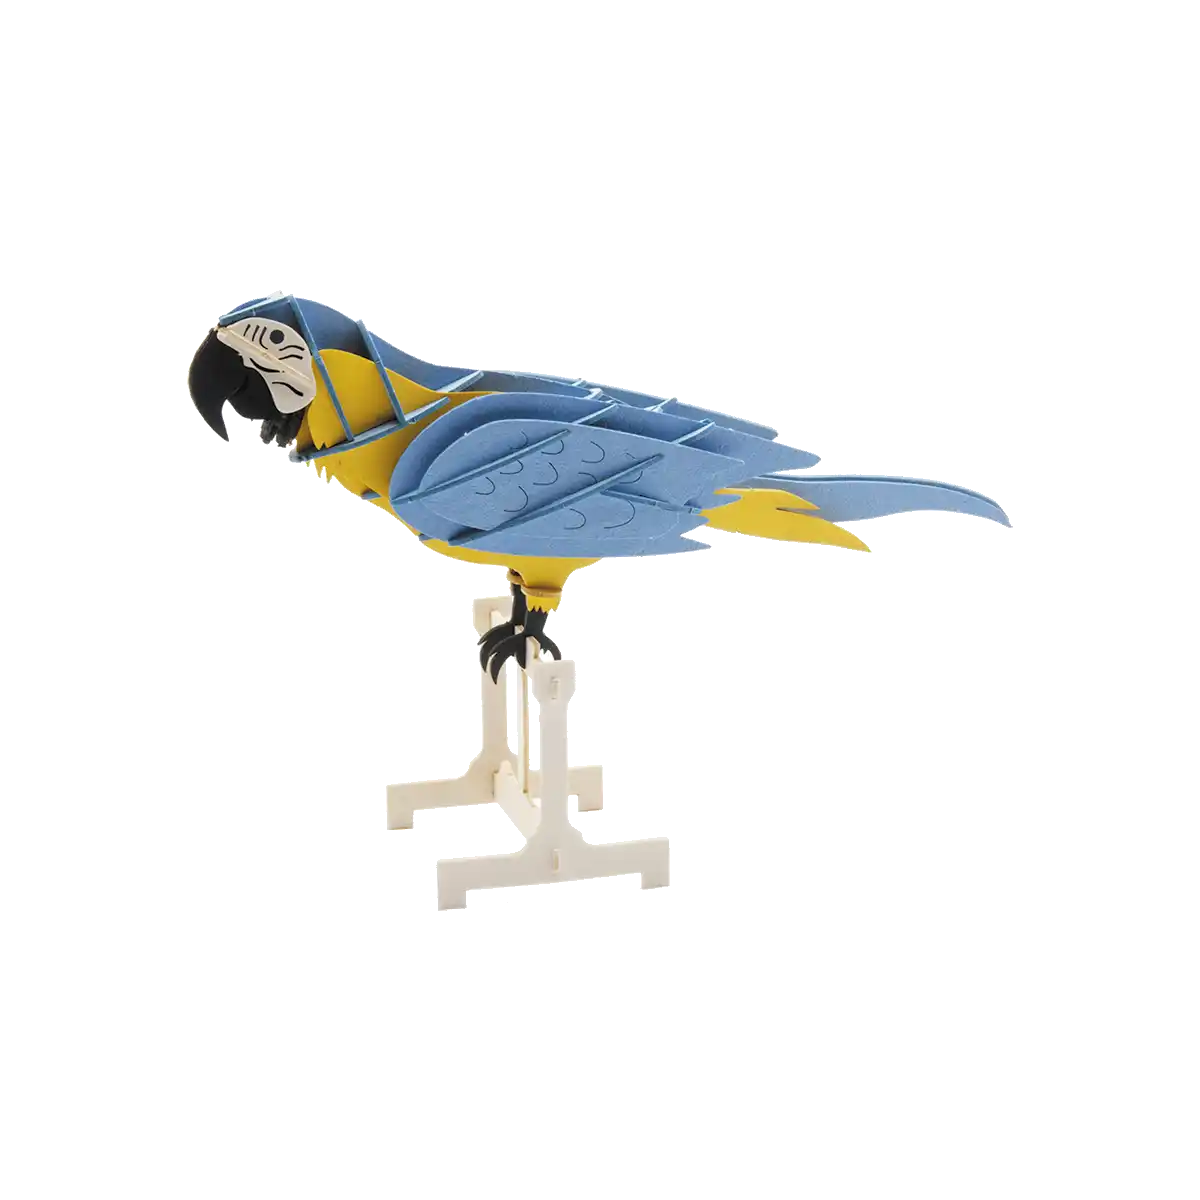 3D Papiermodell / Papagei